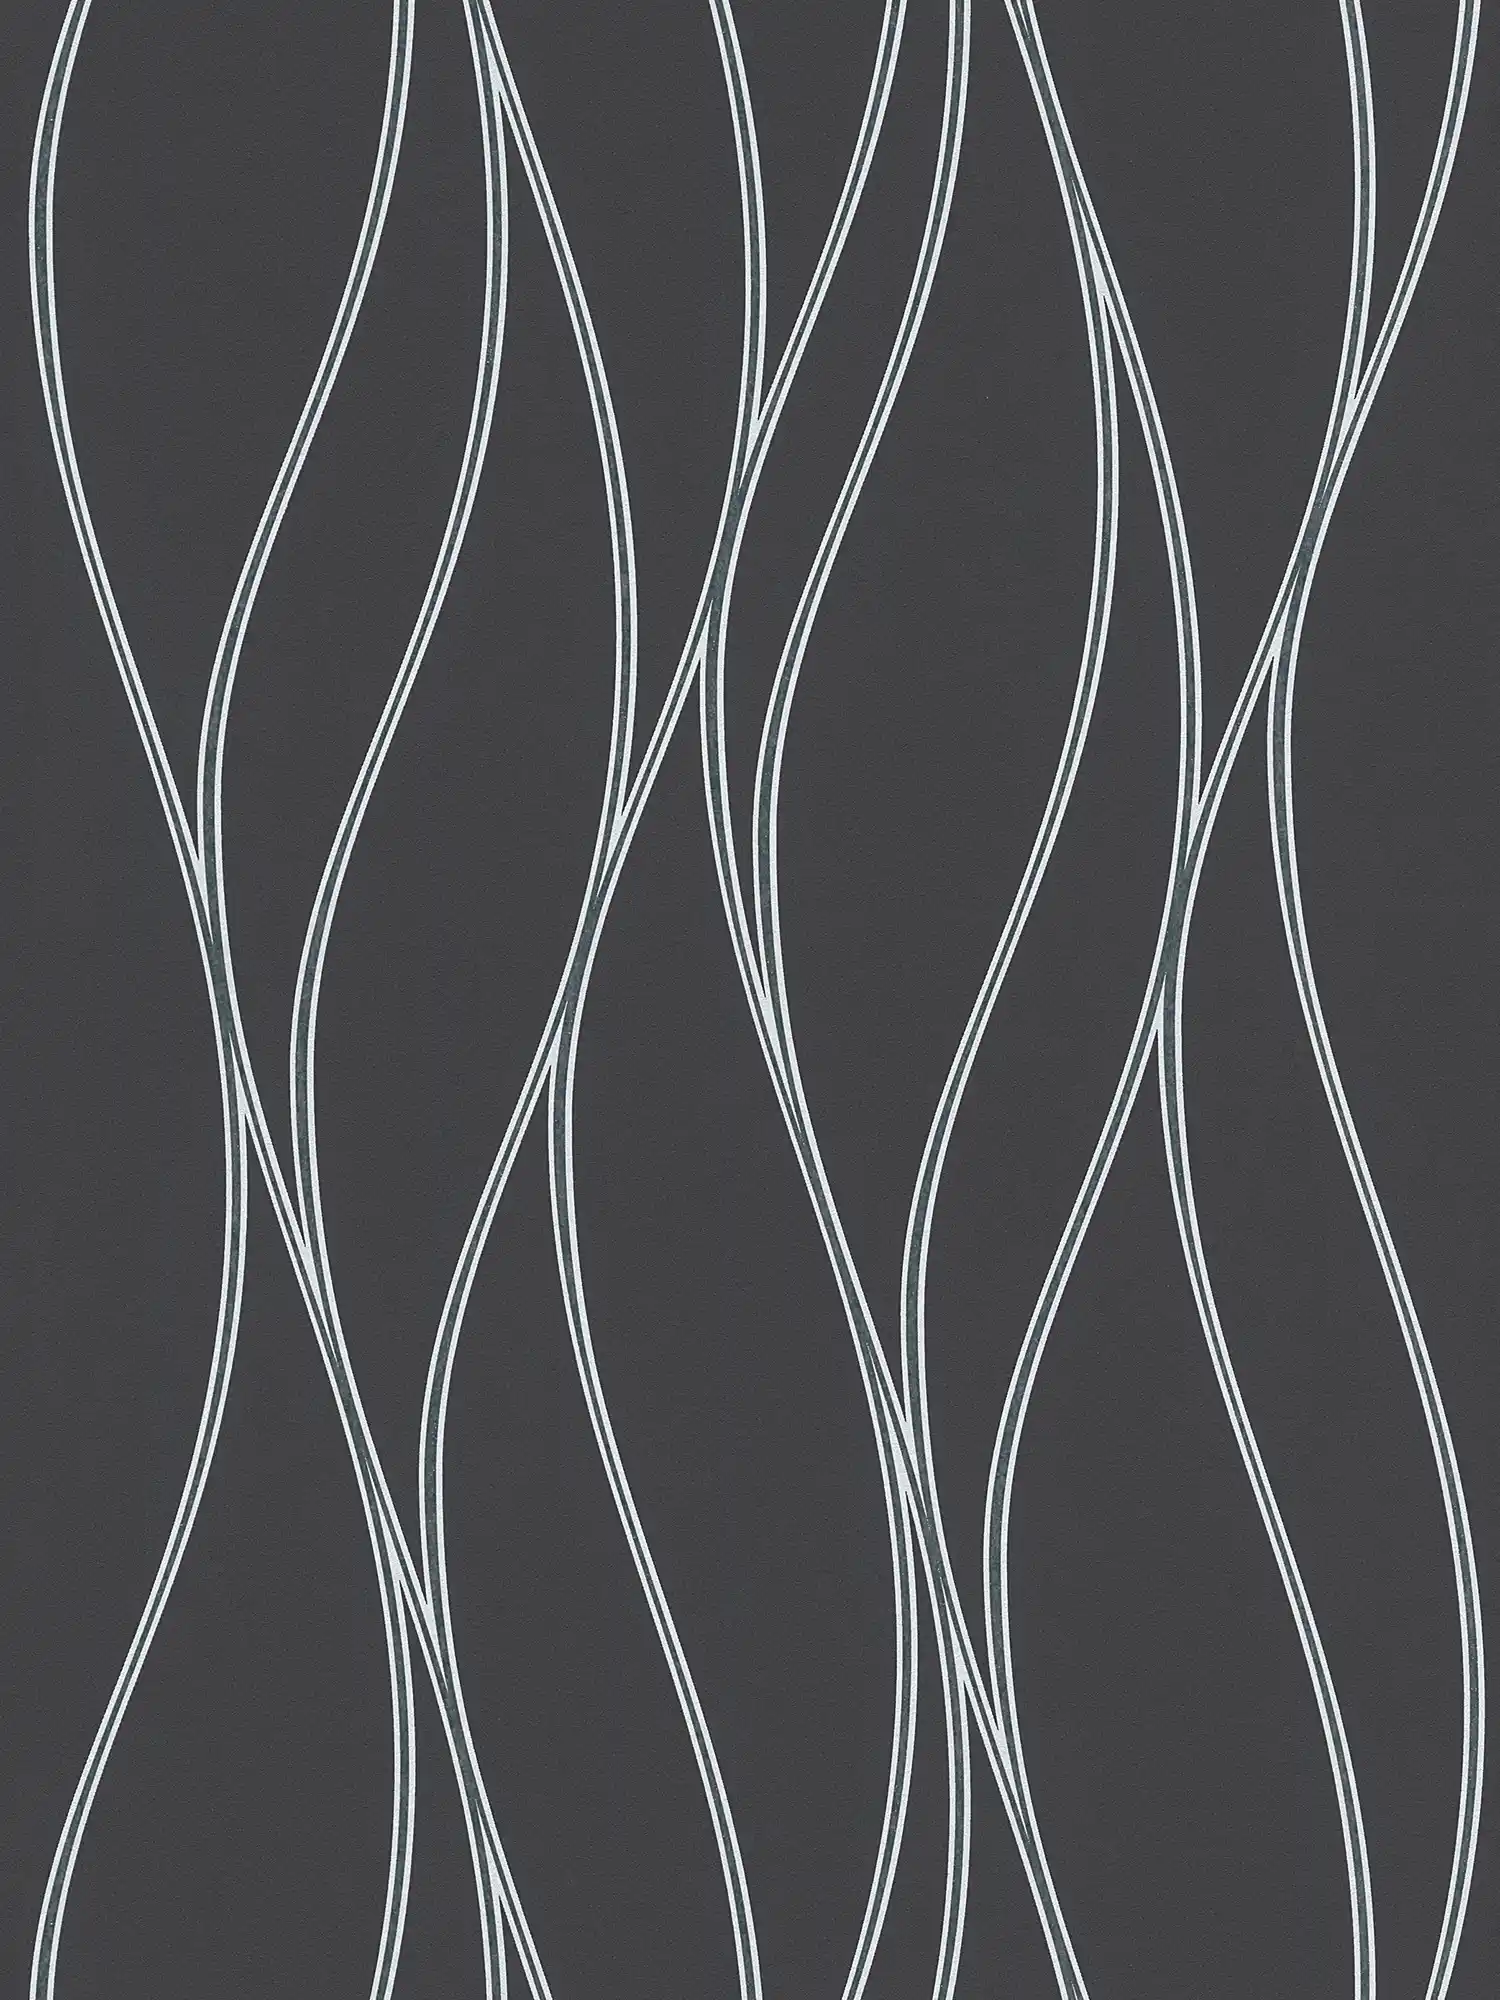 behang golvende lijnen verticaal, metallic effect - zwart, zilver, grijs
